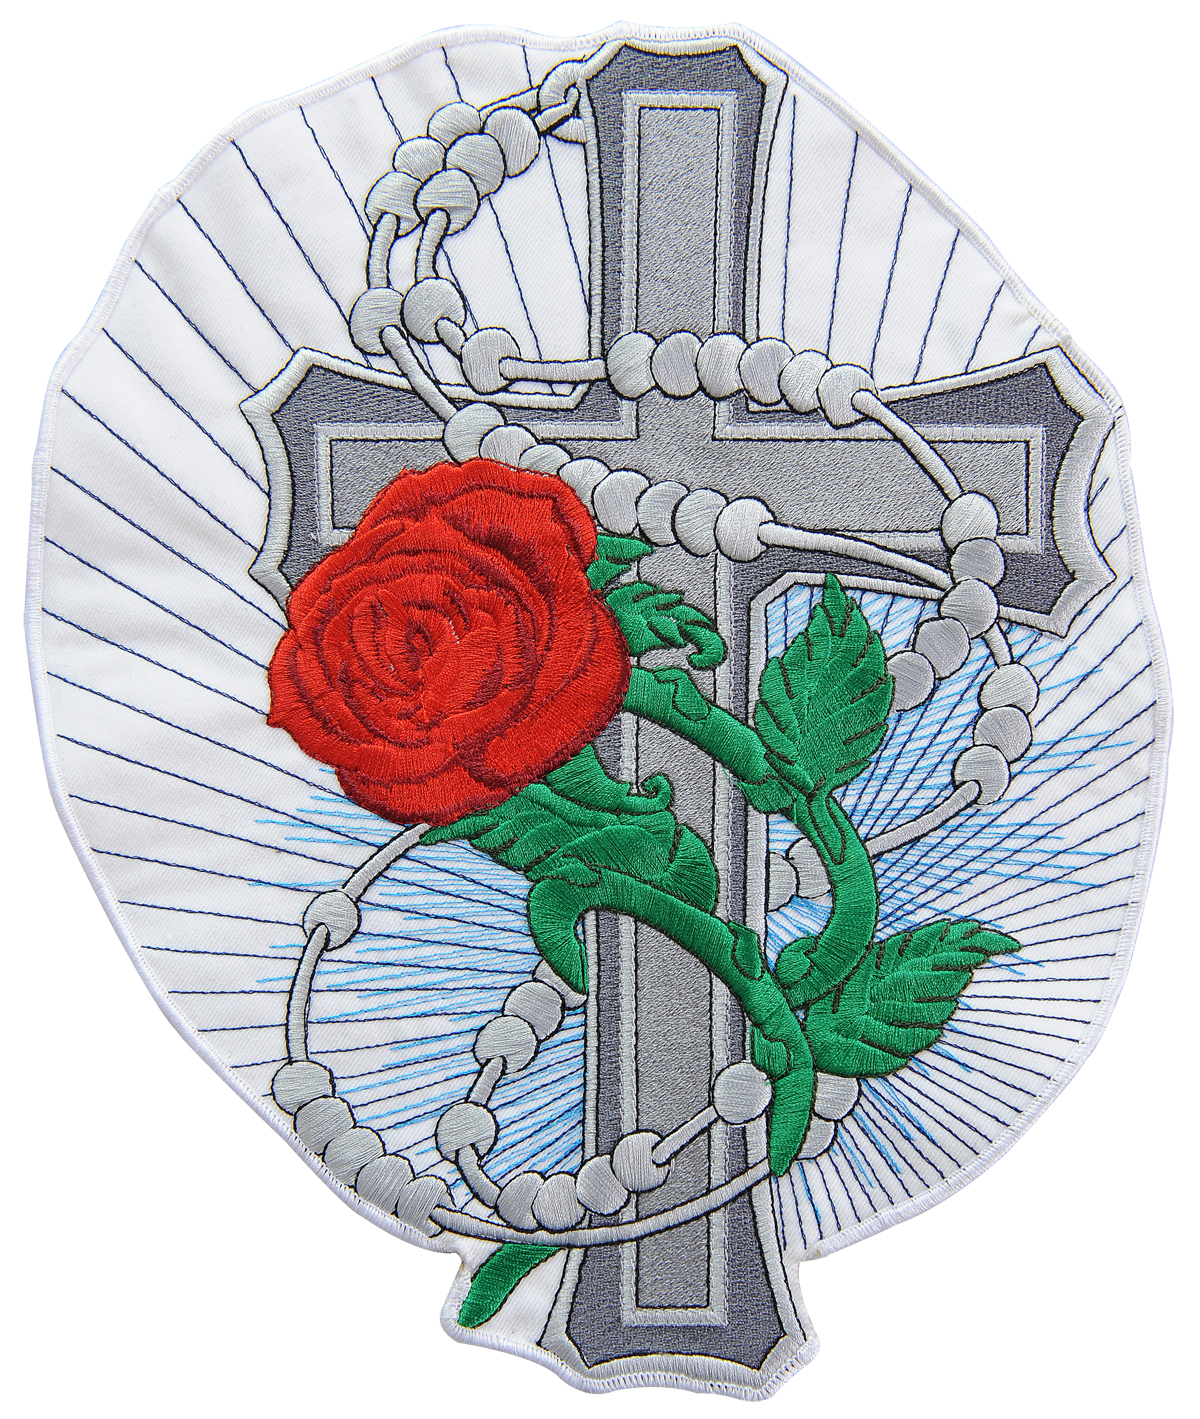 naszywka róża z krzyżem